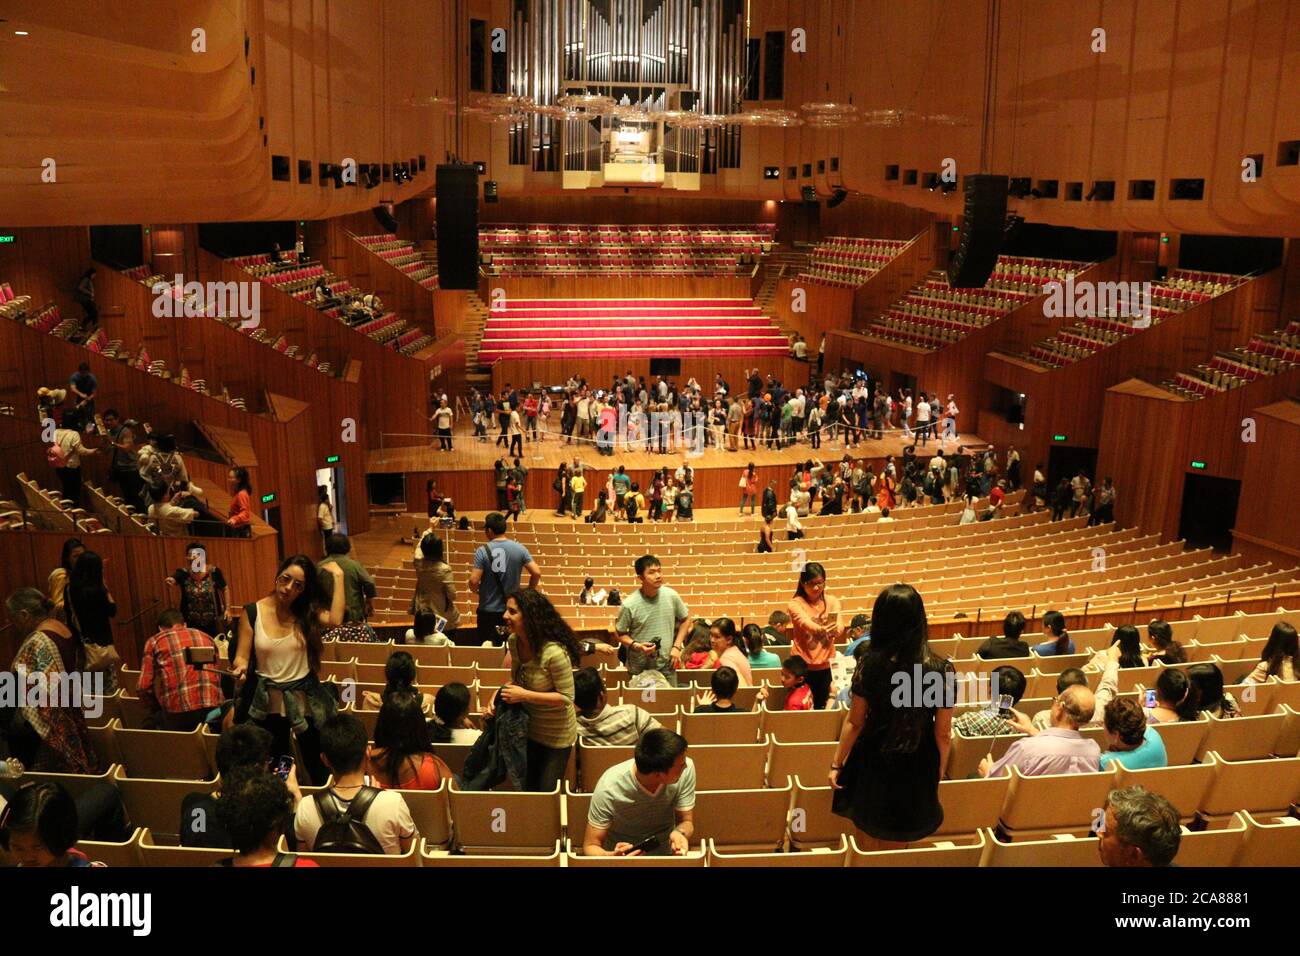 All'interno della sala concerti della Sydney Opera House. L'edificio più famoso dell'Australia, la Sydney Opera House ha aperto le sue porte al pubblico. Foto Stock